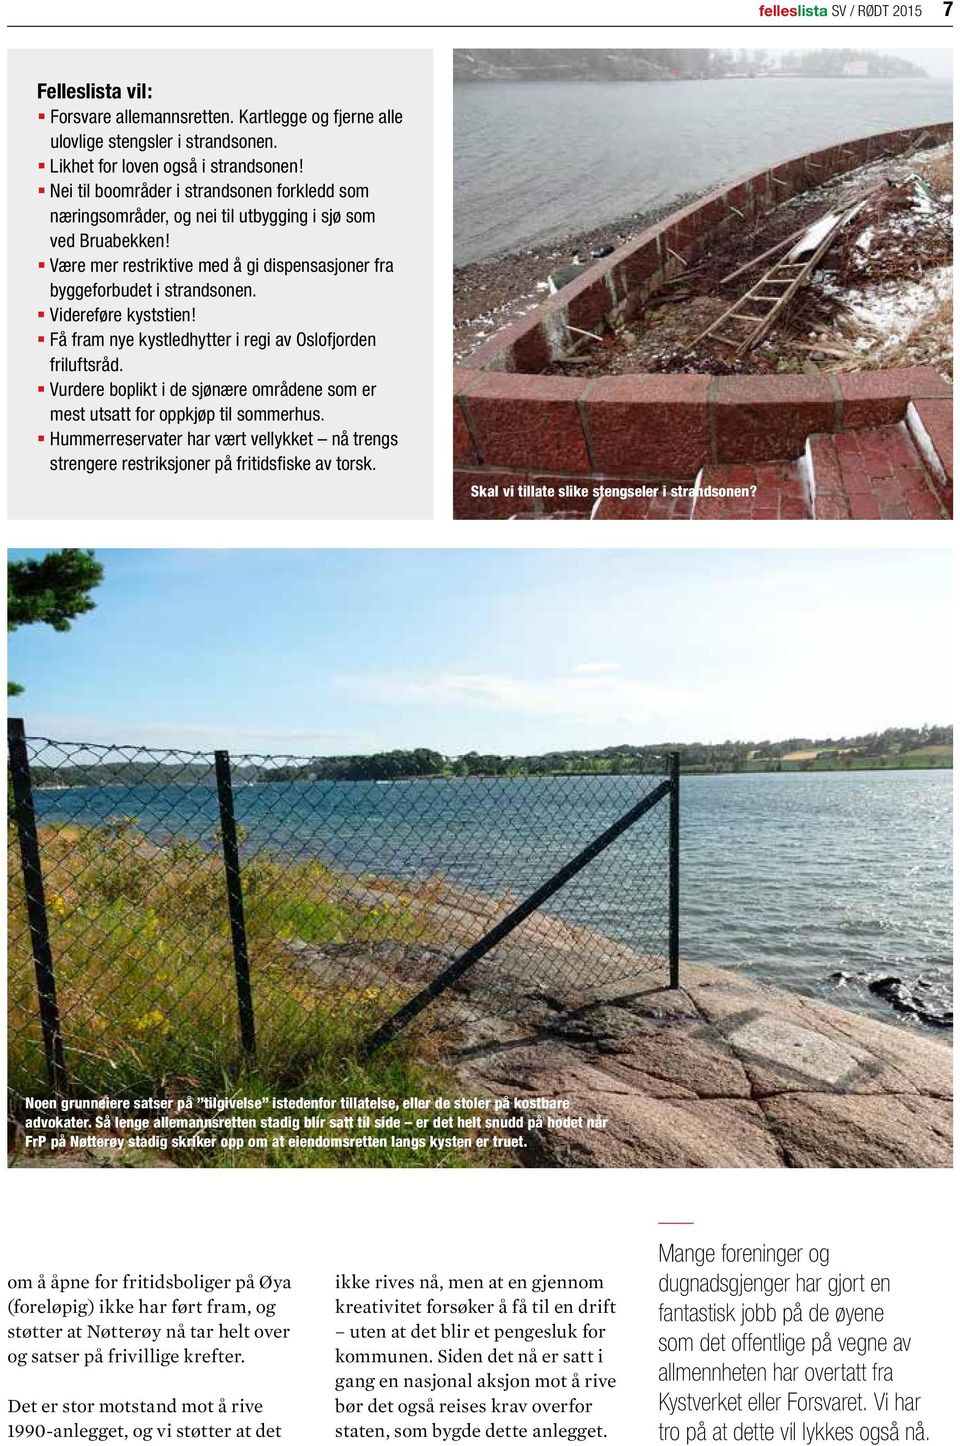 Videreføre kyststien! Få fram nye kystledhytter i regi av Oslofjorden friluftsråd. Vurdere boplikt i de sjønære områdene som er mest utsatt for oppkjøp til sommerhus.